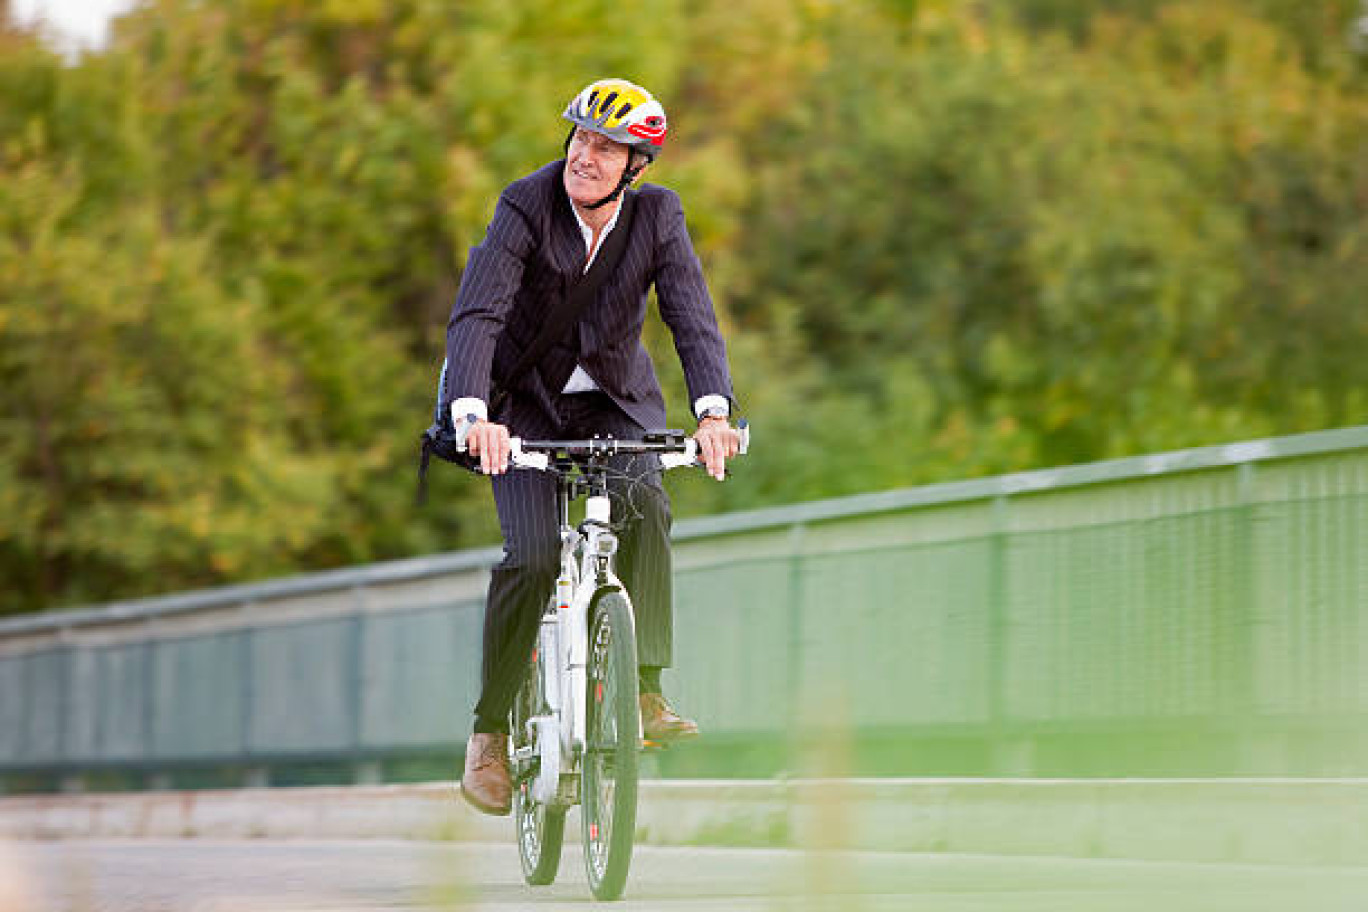 Par le vélo à assistance électrique, soutenir les personnes rencontrant des freins à la mobilité. 